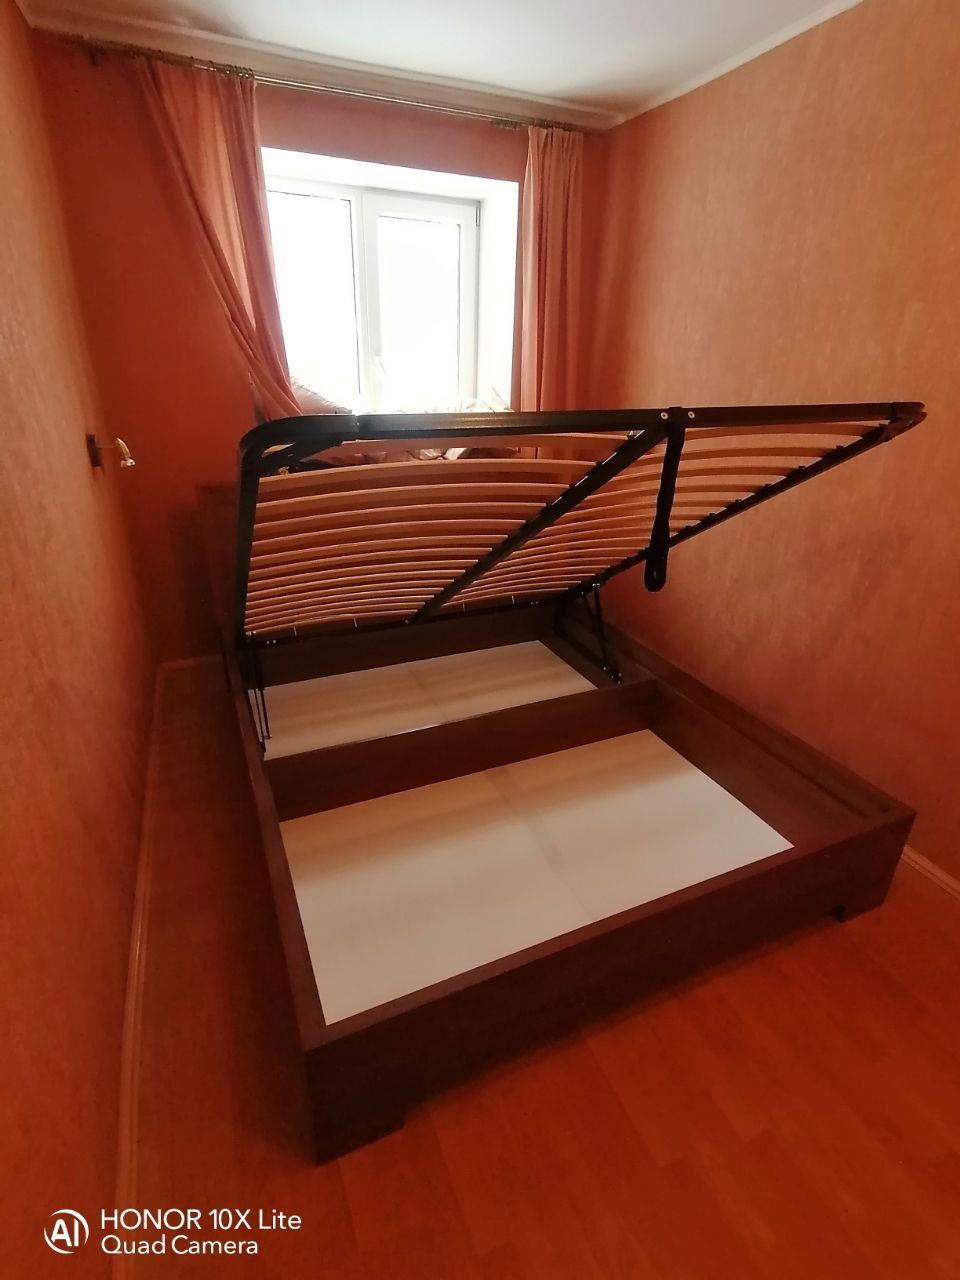 Односпальная кровать "Мальта" 90 х 190 с подъемным механизмом цвет сонома